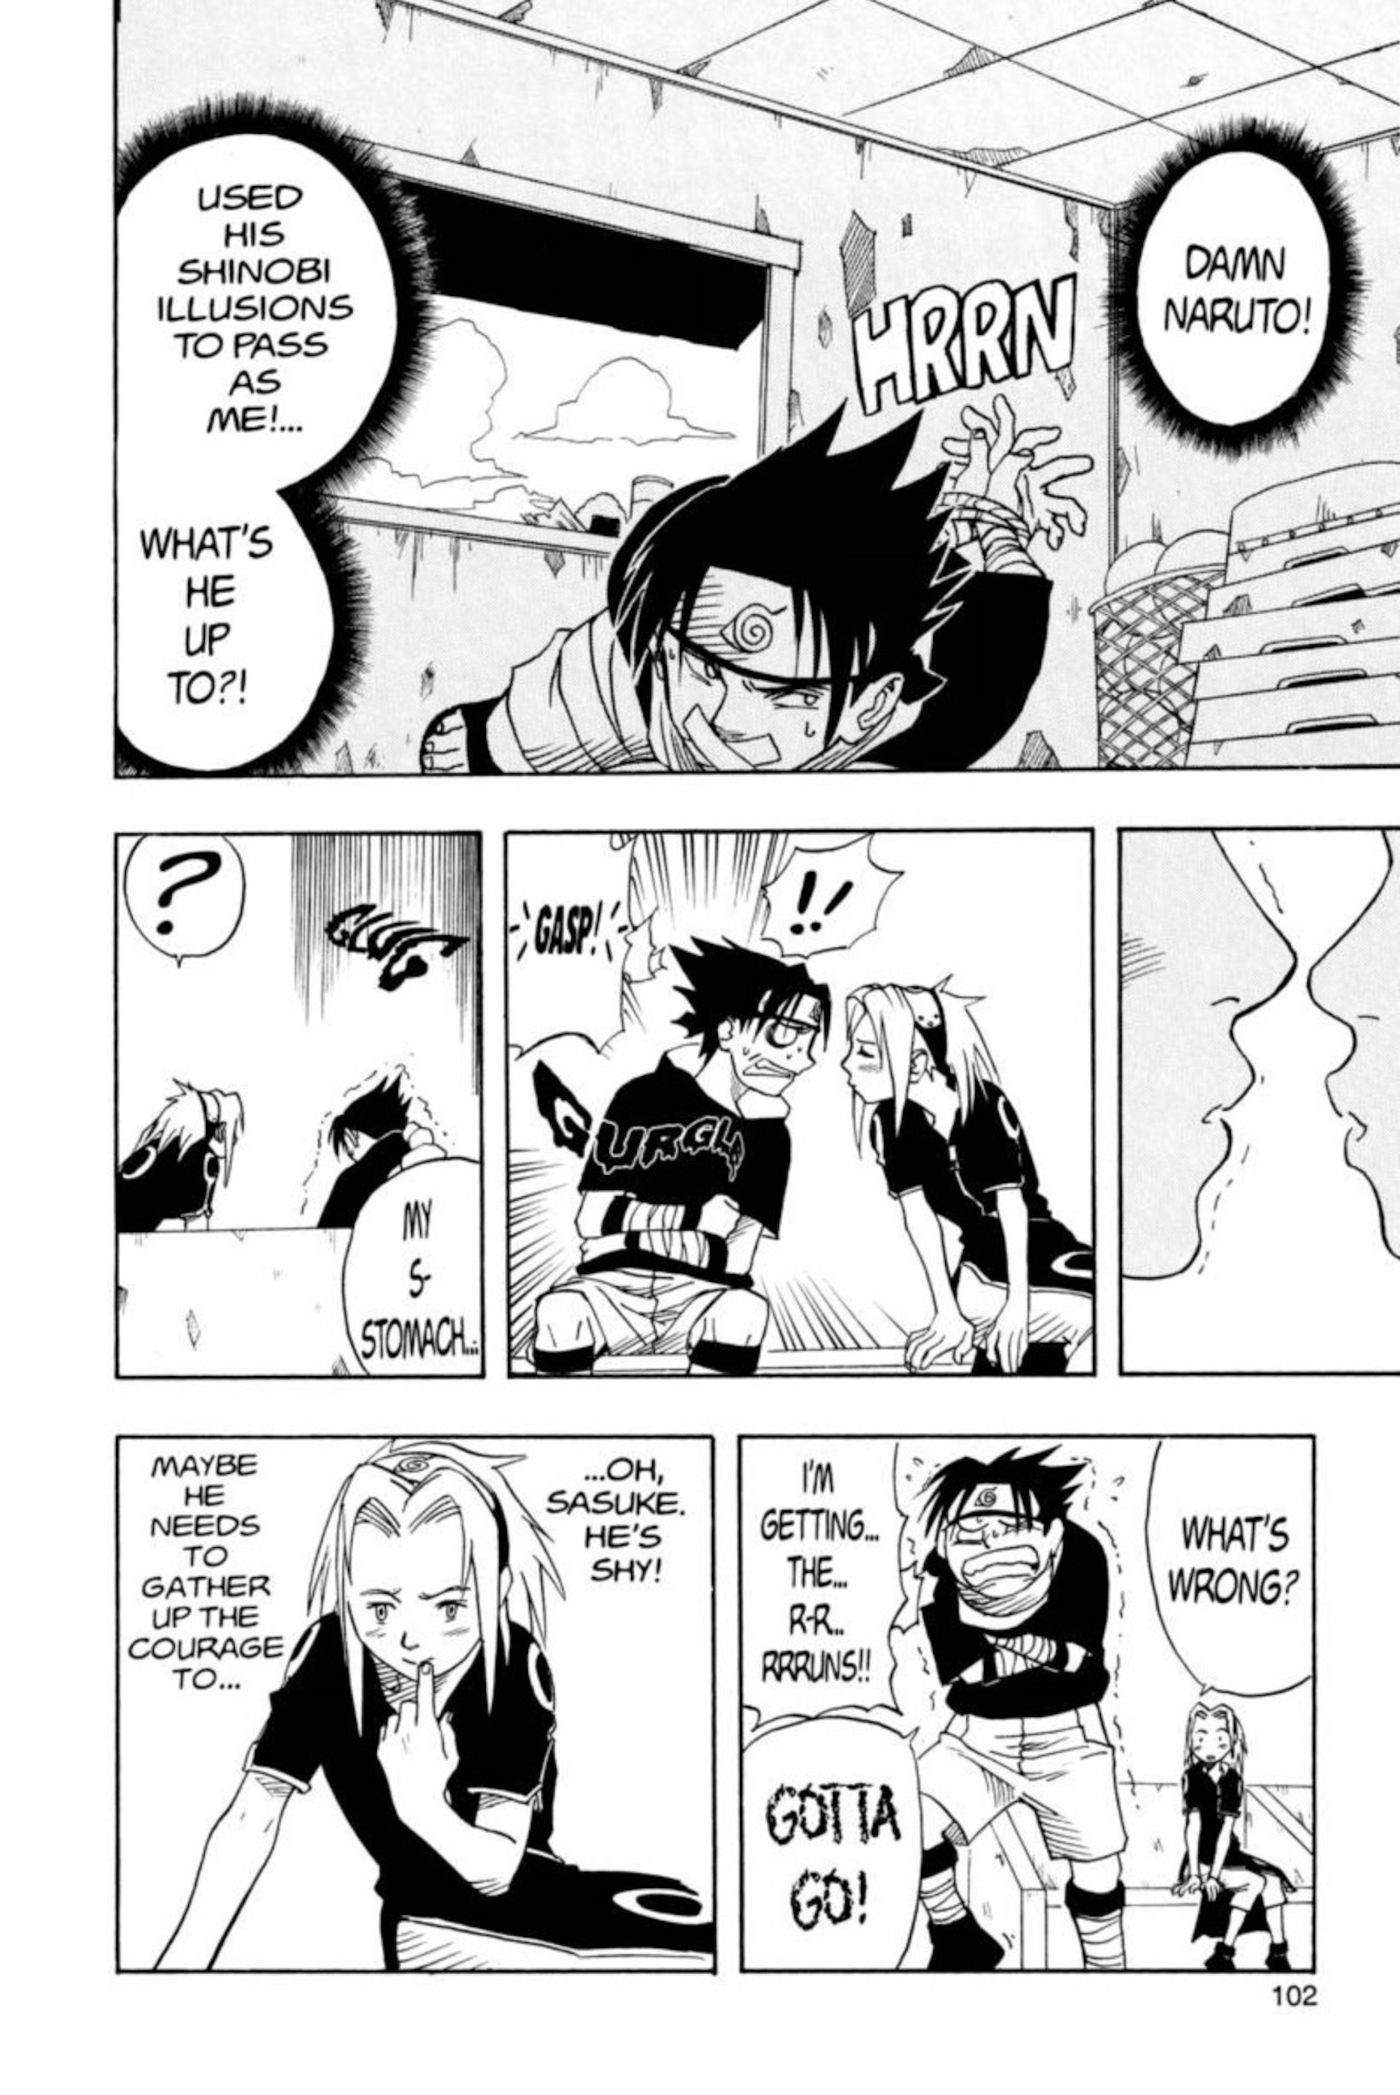 Gambar dari manga Naruto chapter 3 menunjukkan Sasuke diikat dan Naruto yang menyamar hampir mencium Sakura sampai dia kabur dan harus pergi.